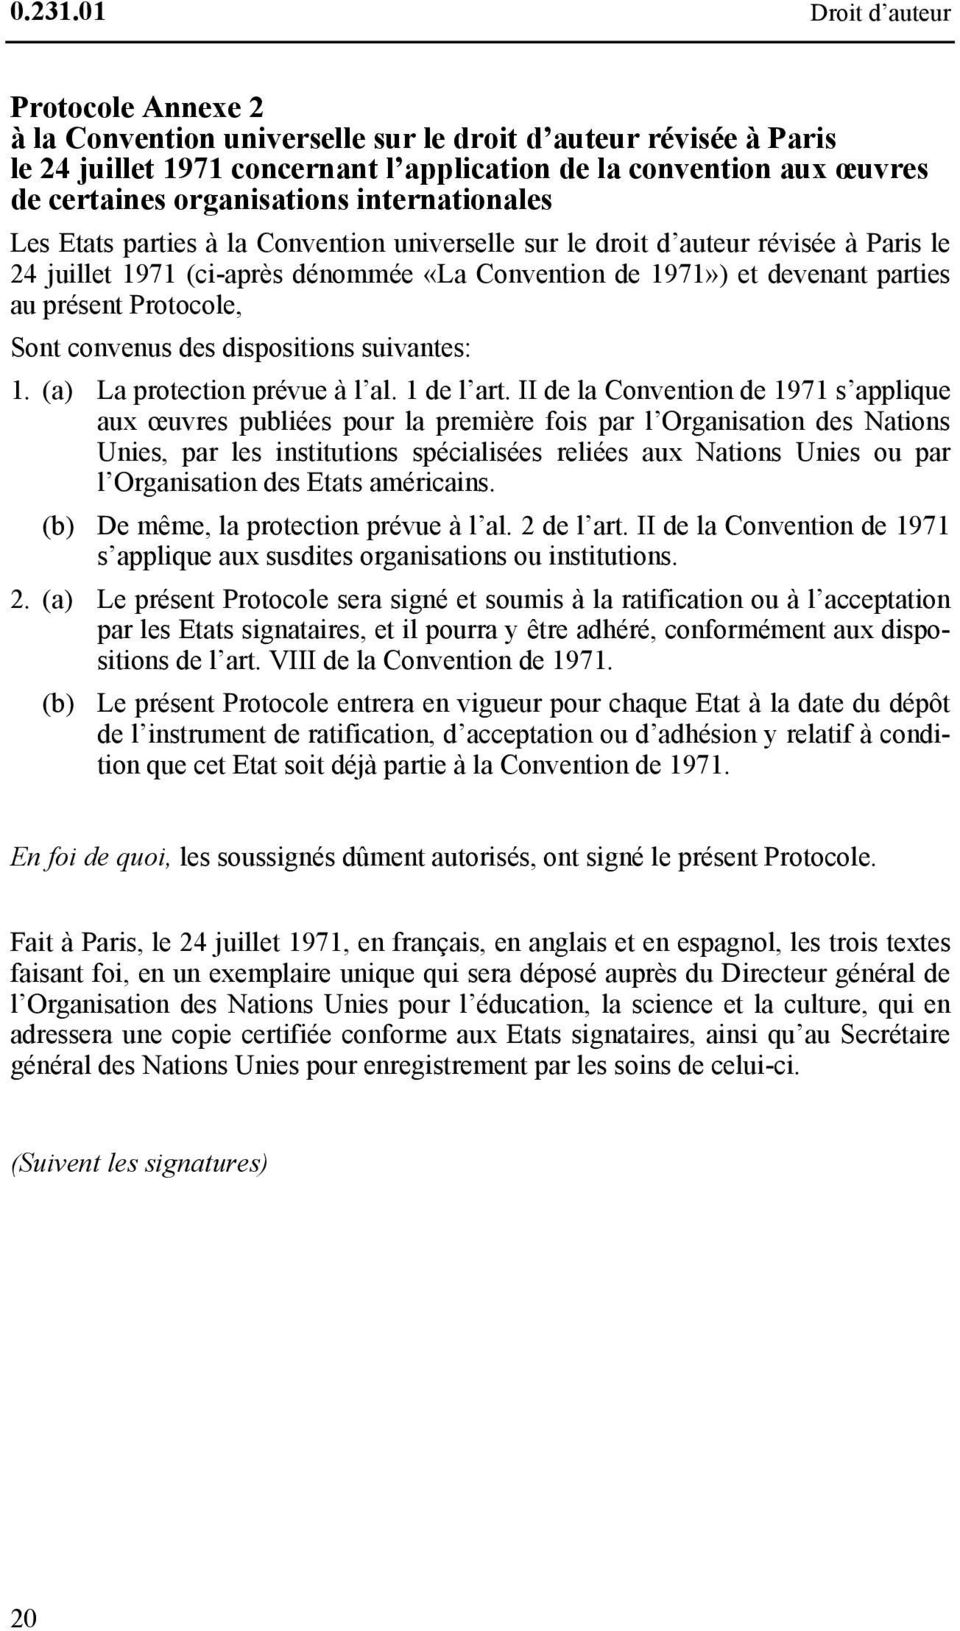 organisations internationales Les Etats parties à la Convention universelle sur le droit d auteur révisée à Paris le 24 juillet 1971 (ci-après dénommée «La Convention de 1971») et devenant parties au